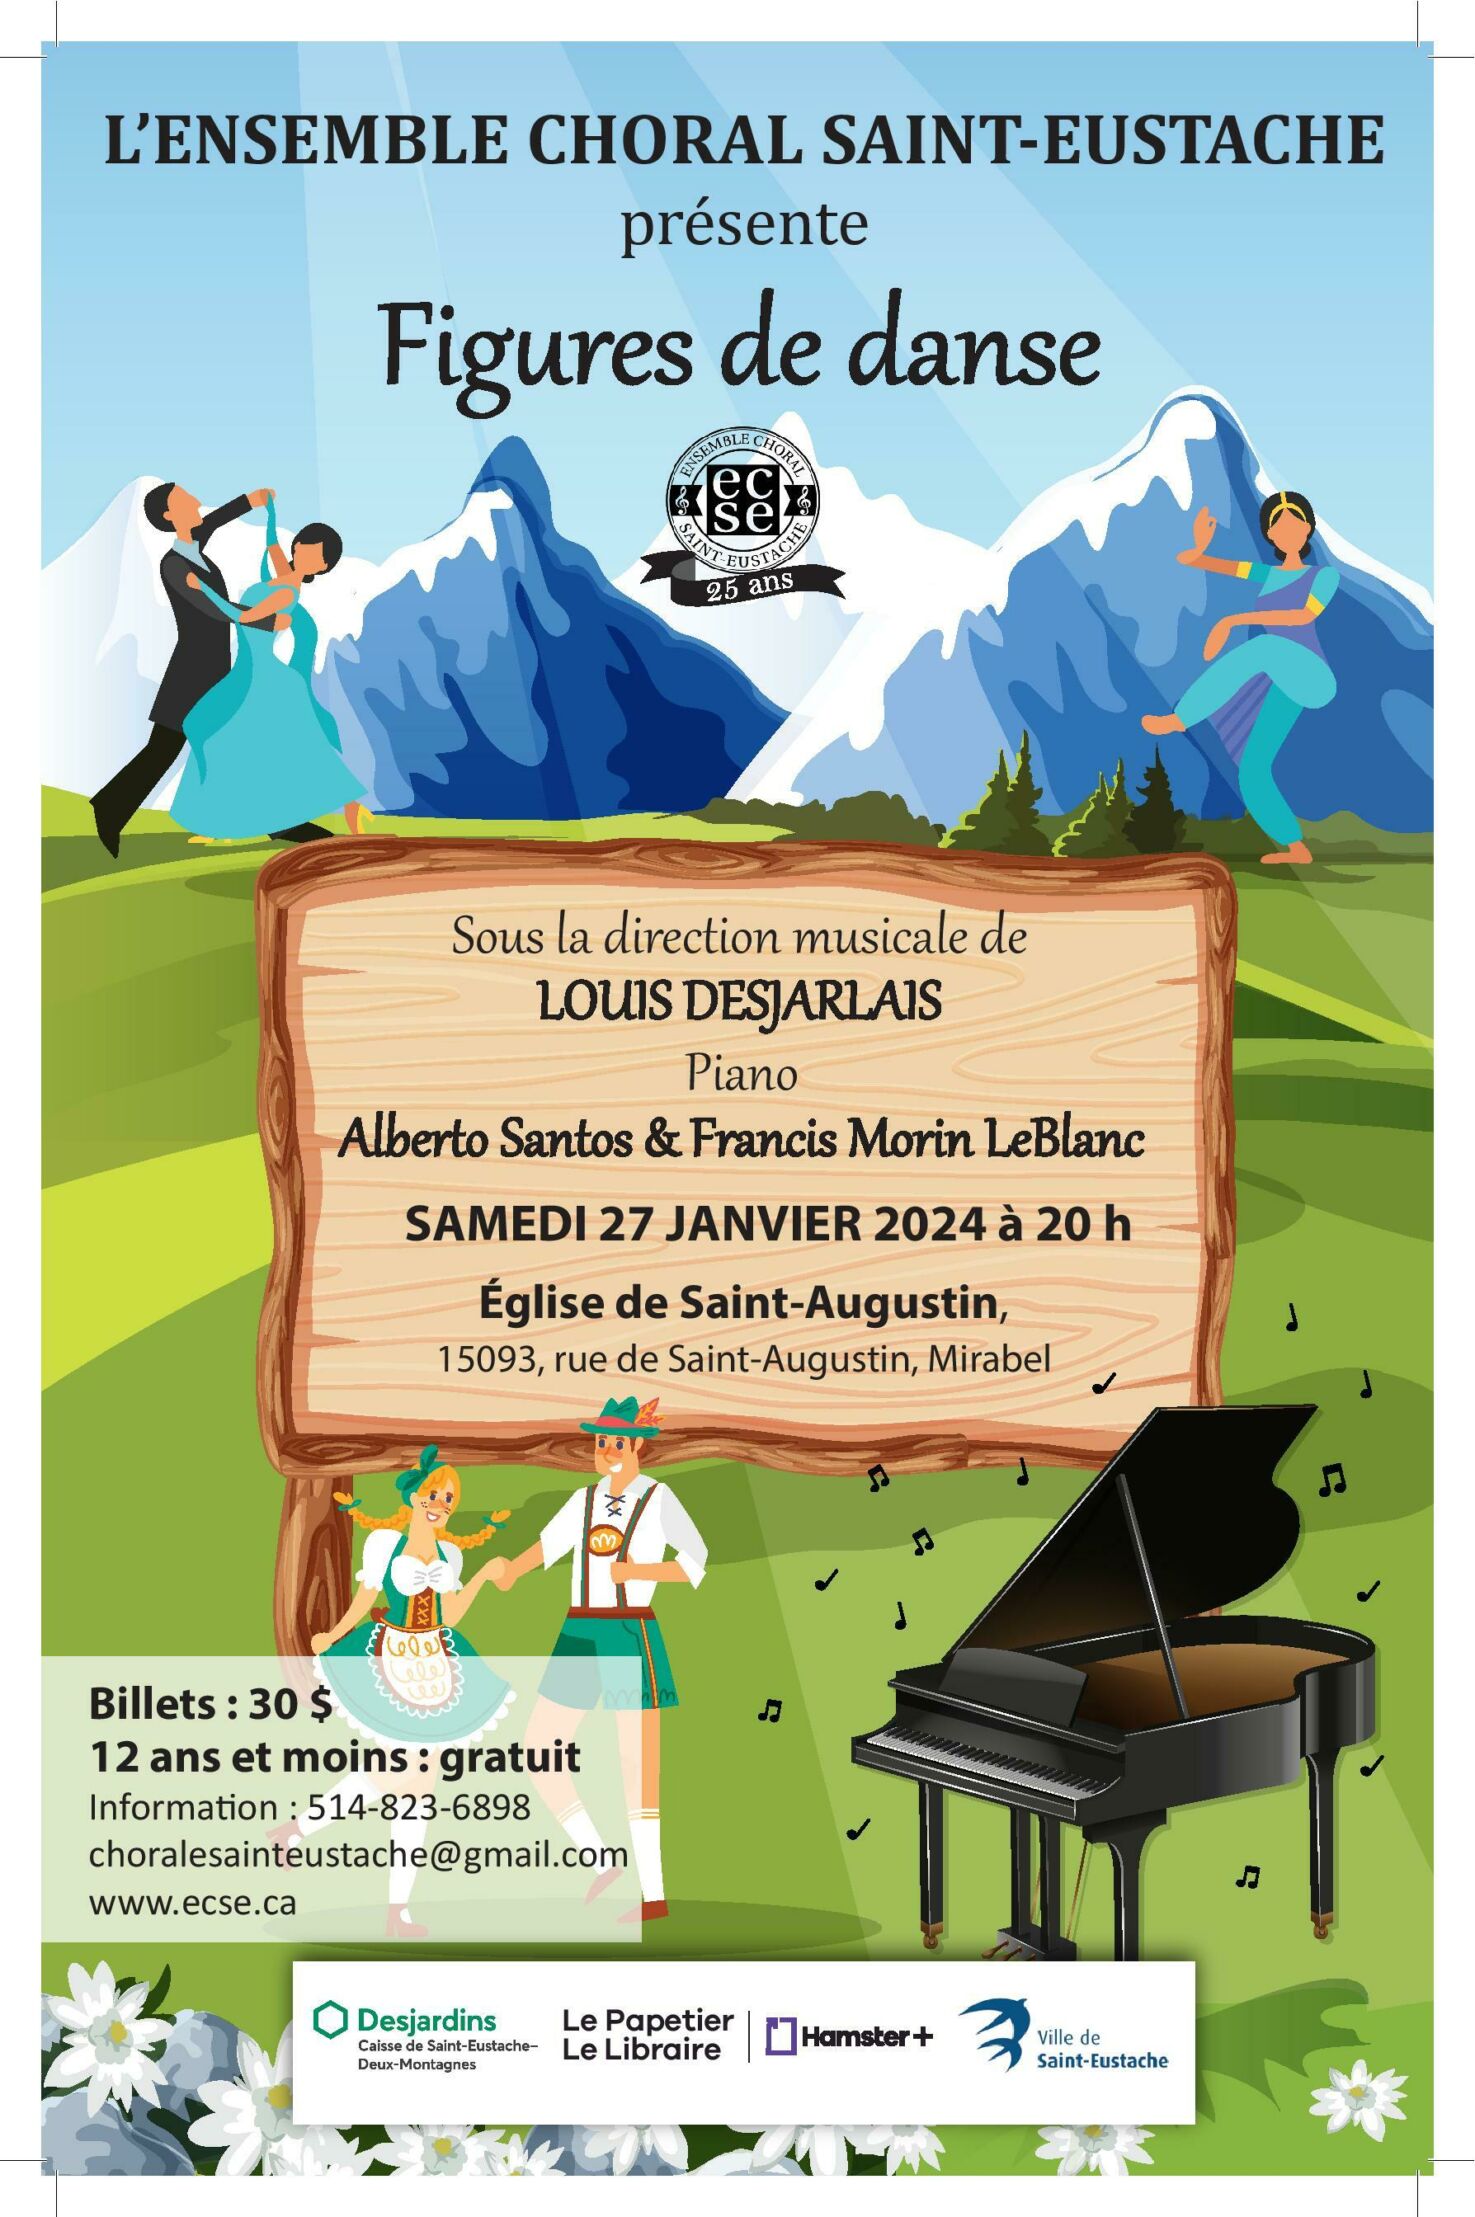 L'ensemble choral Saint-Eustache/Concert de janvier 2024